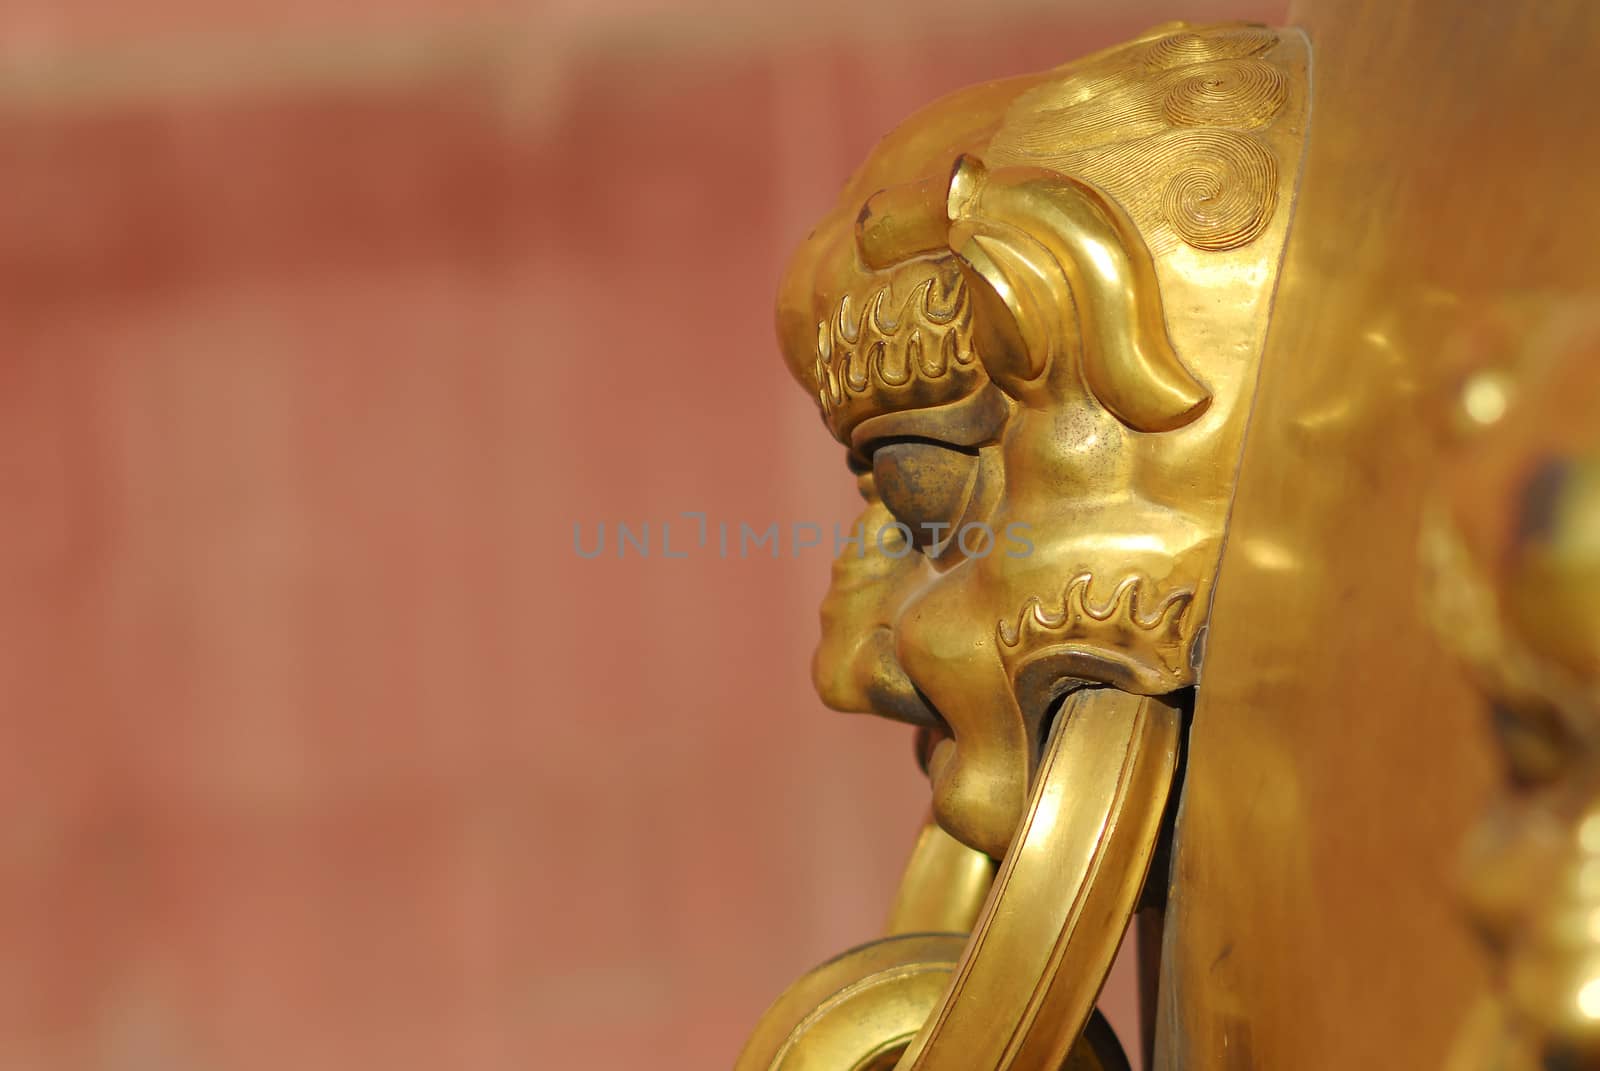 Golden dragon handle from Forbidden City in Beijing.